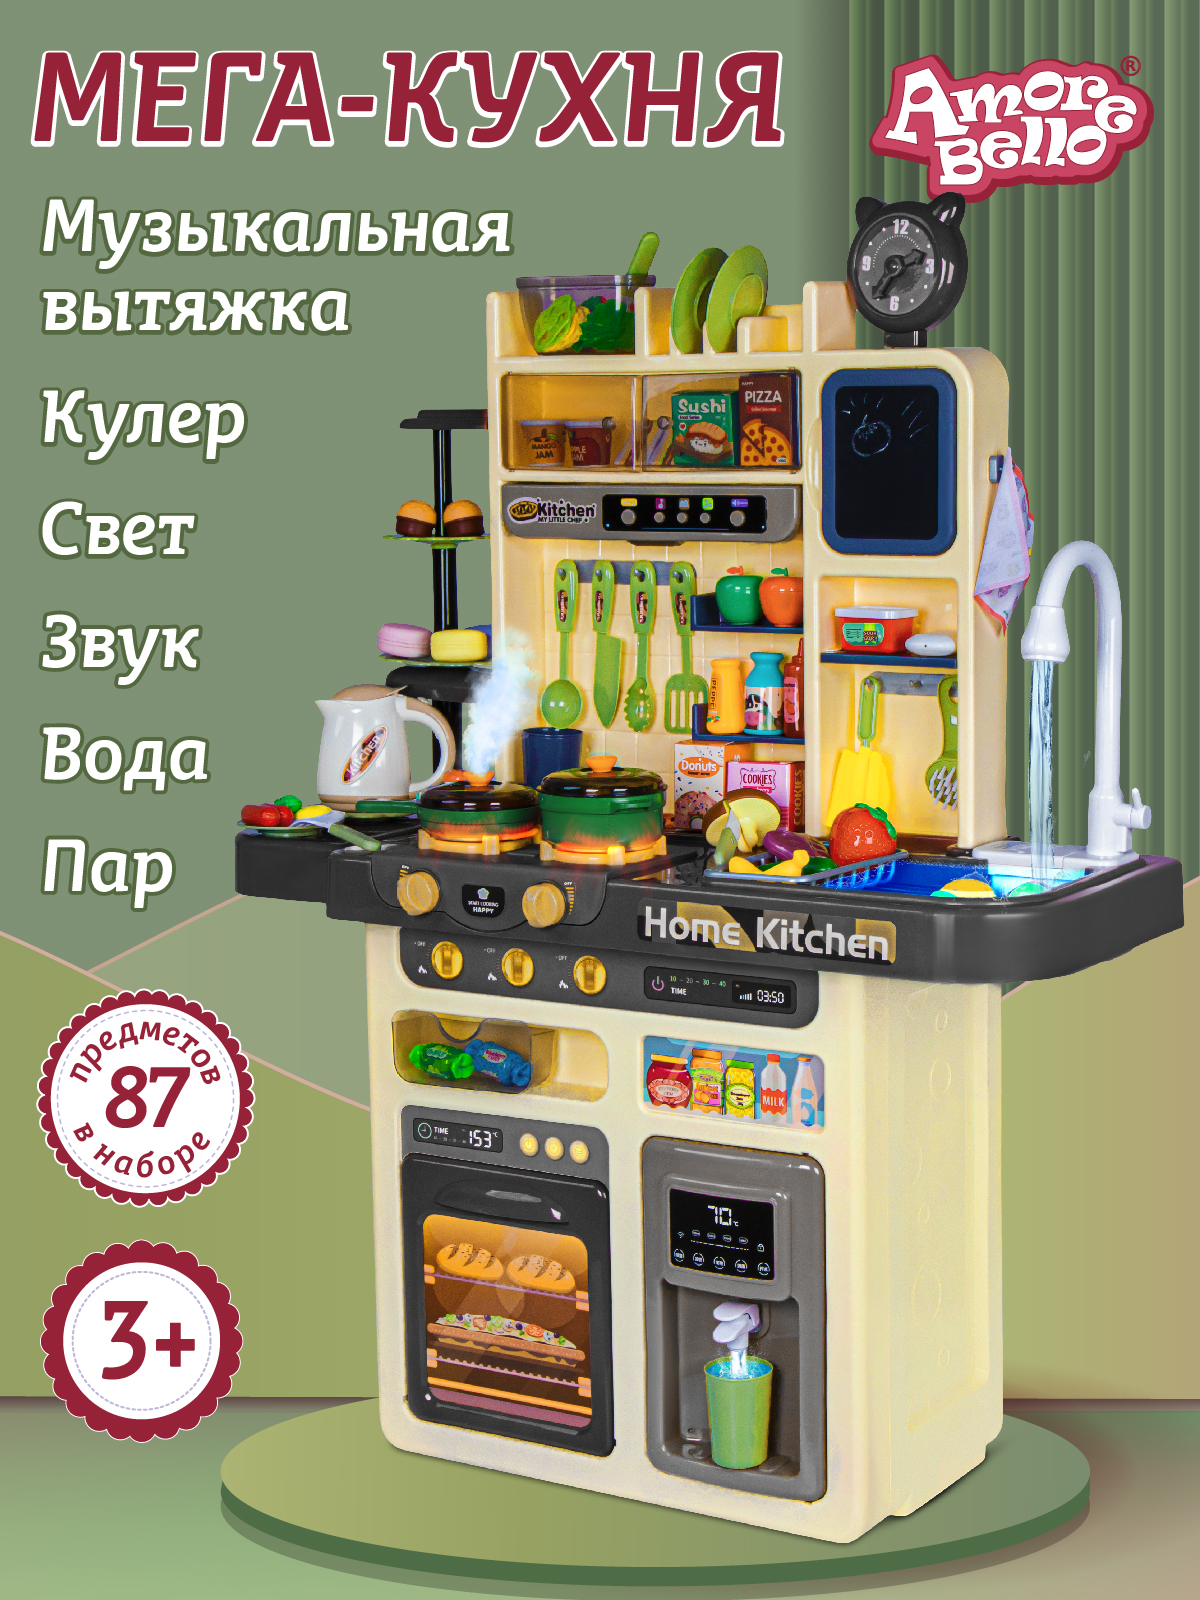 Игровой набор Amore Bello Кухня со световыми и звуковыми эффектами JB0211650